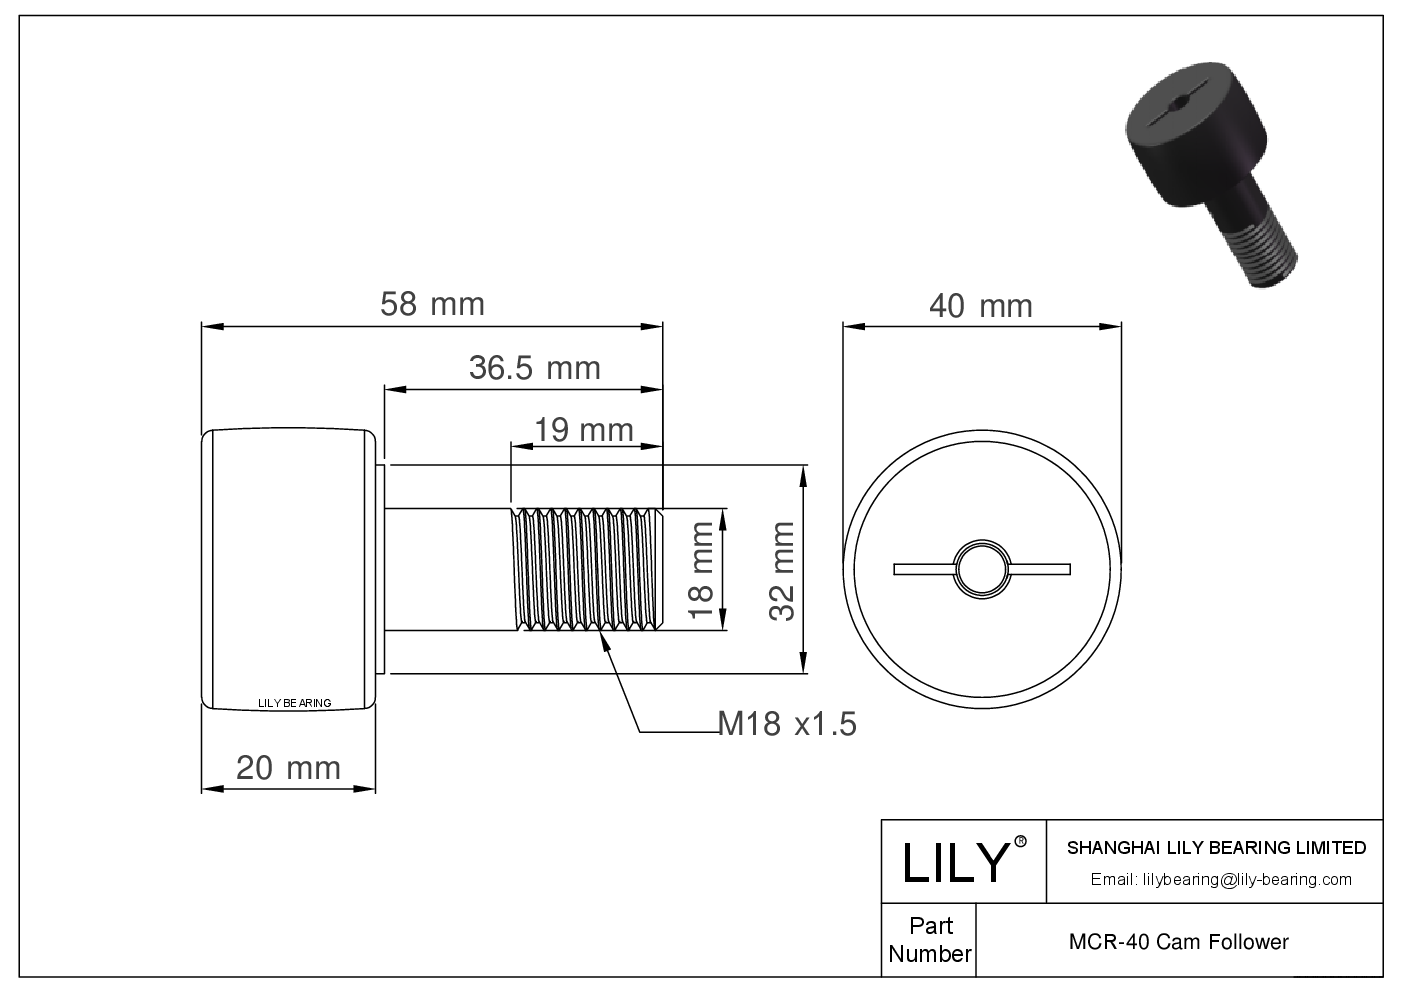 MCR-40 Stud Style Metric Cam Followers CAD图形